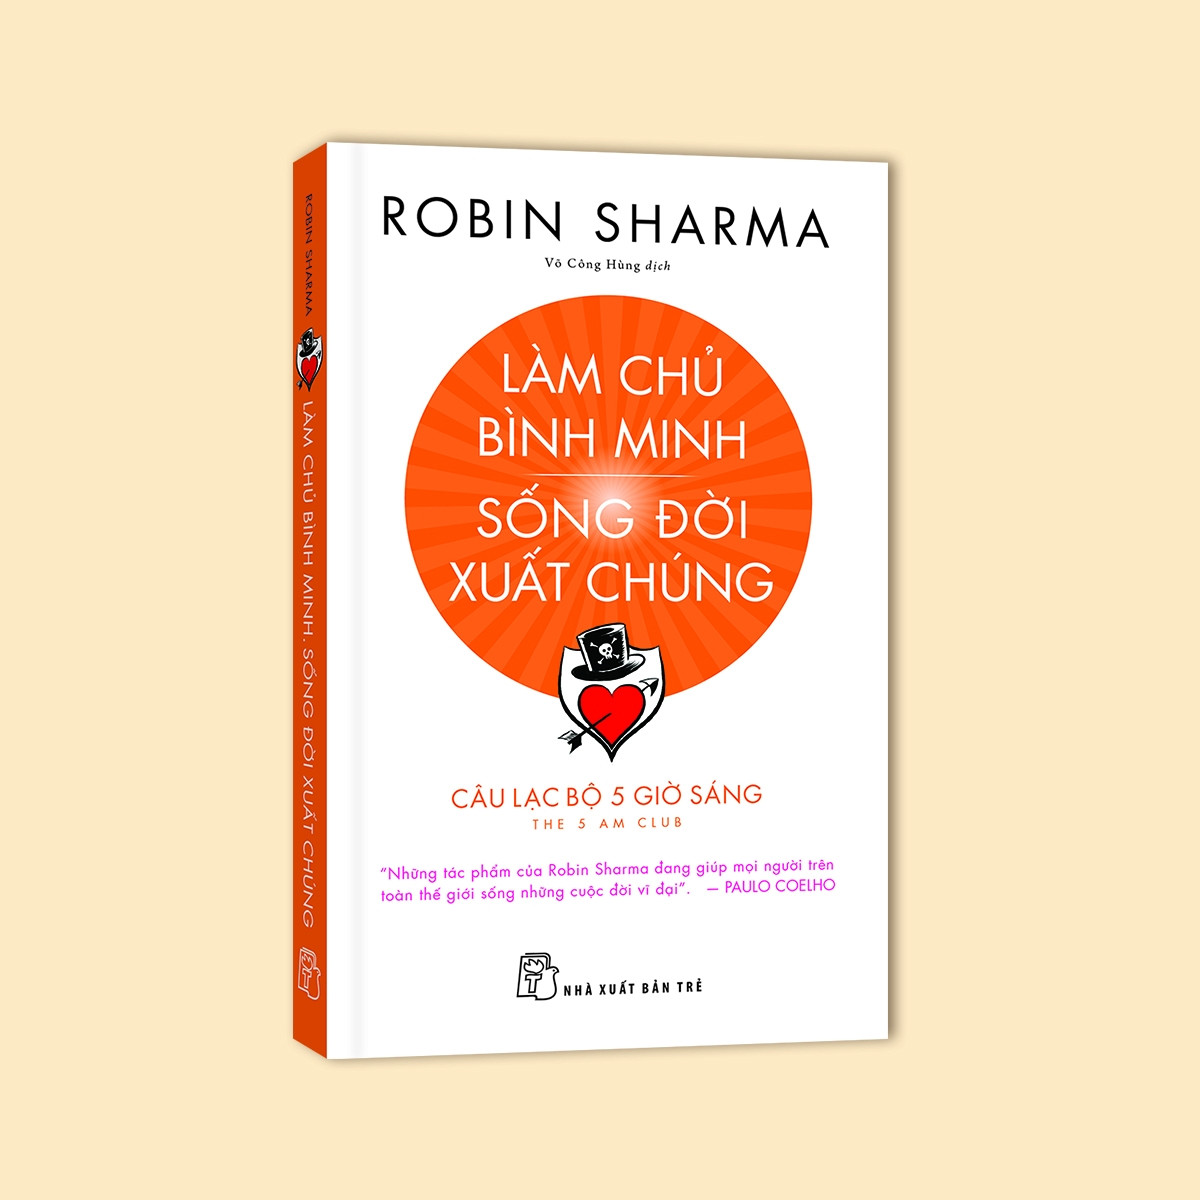 LÀM CHỦ BÌNH MINH SỐNG ĐỜI XUẤT CHÚNG - Robin Sharma - Võ Công Hùng dịch - (bìa mềm)